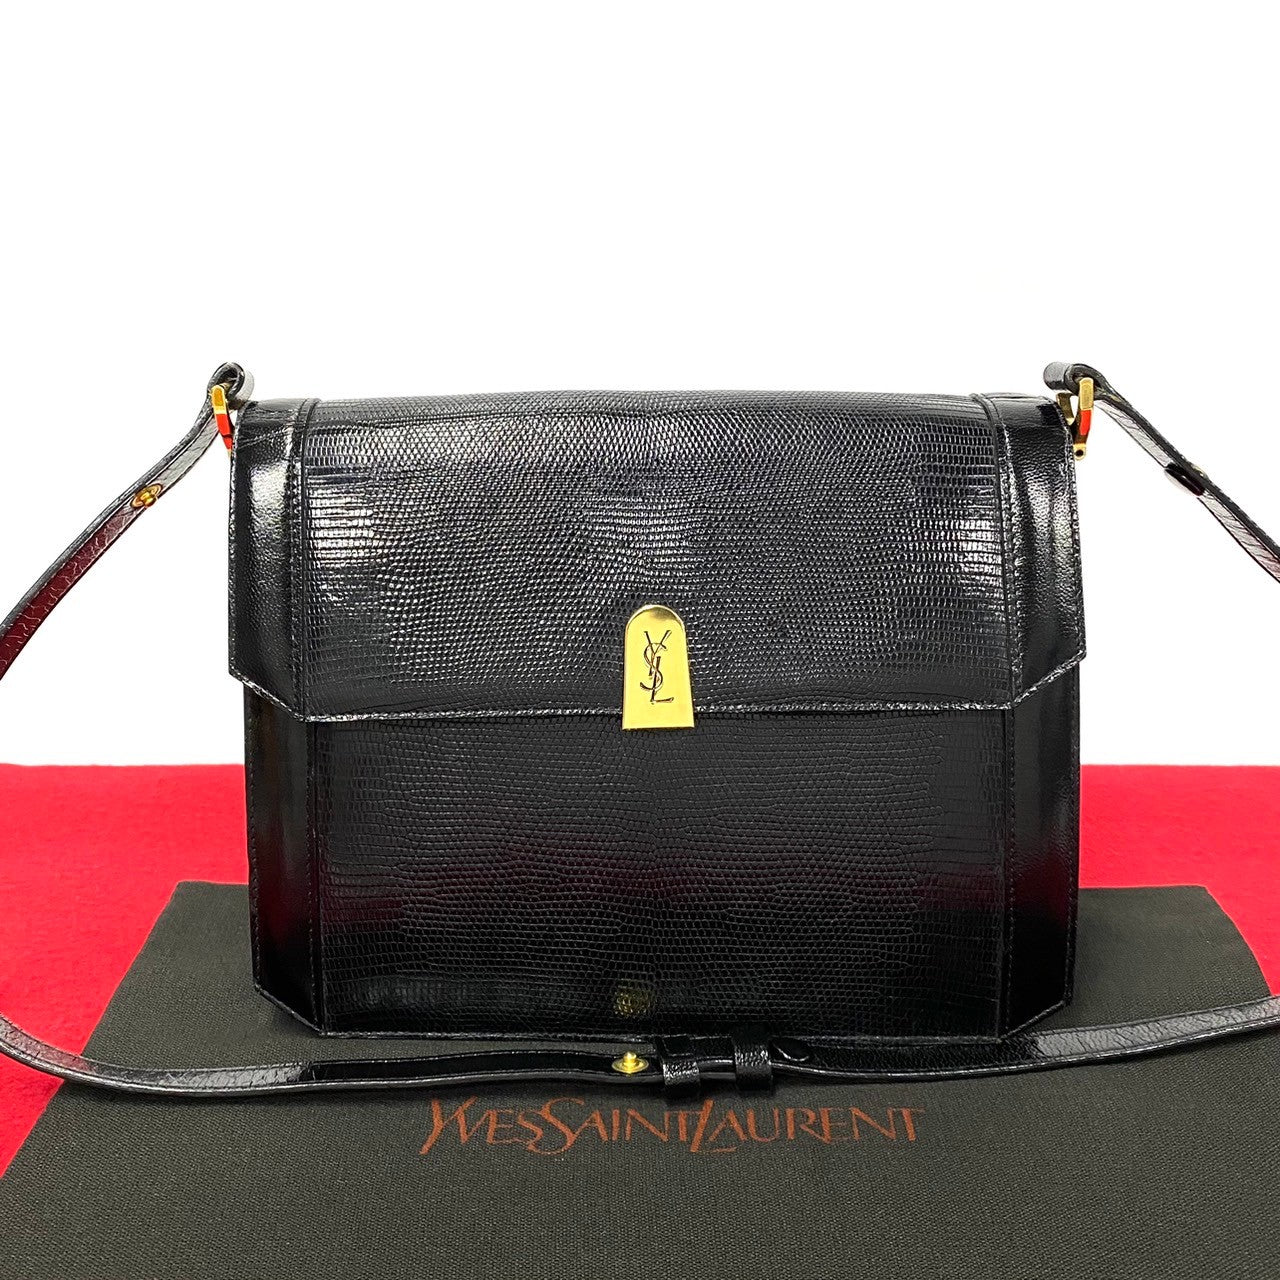 Yves Saint Laurent YSL Logo Leather Genuine Handbag Leather Shoulder Bag 73373 in Excellent condition